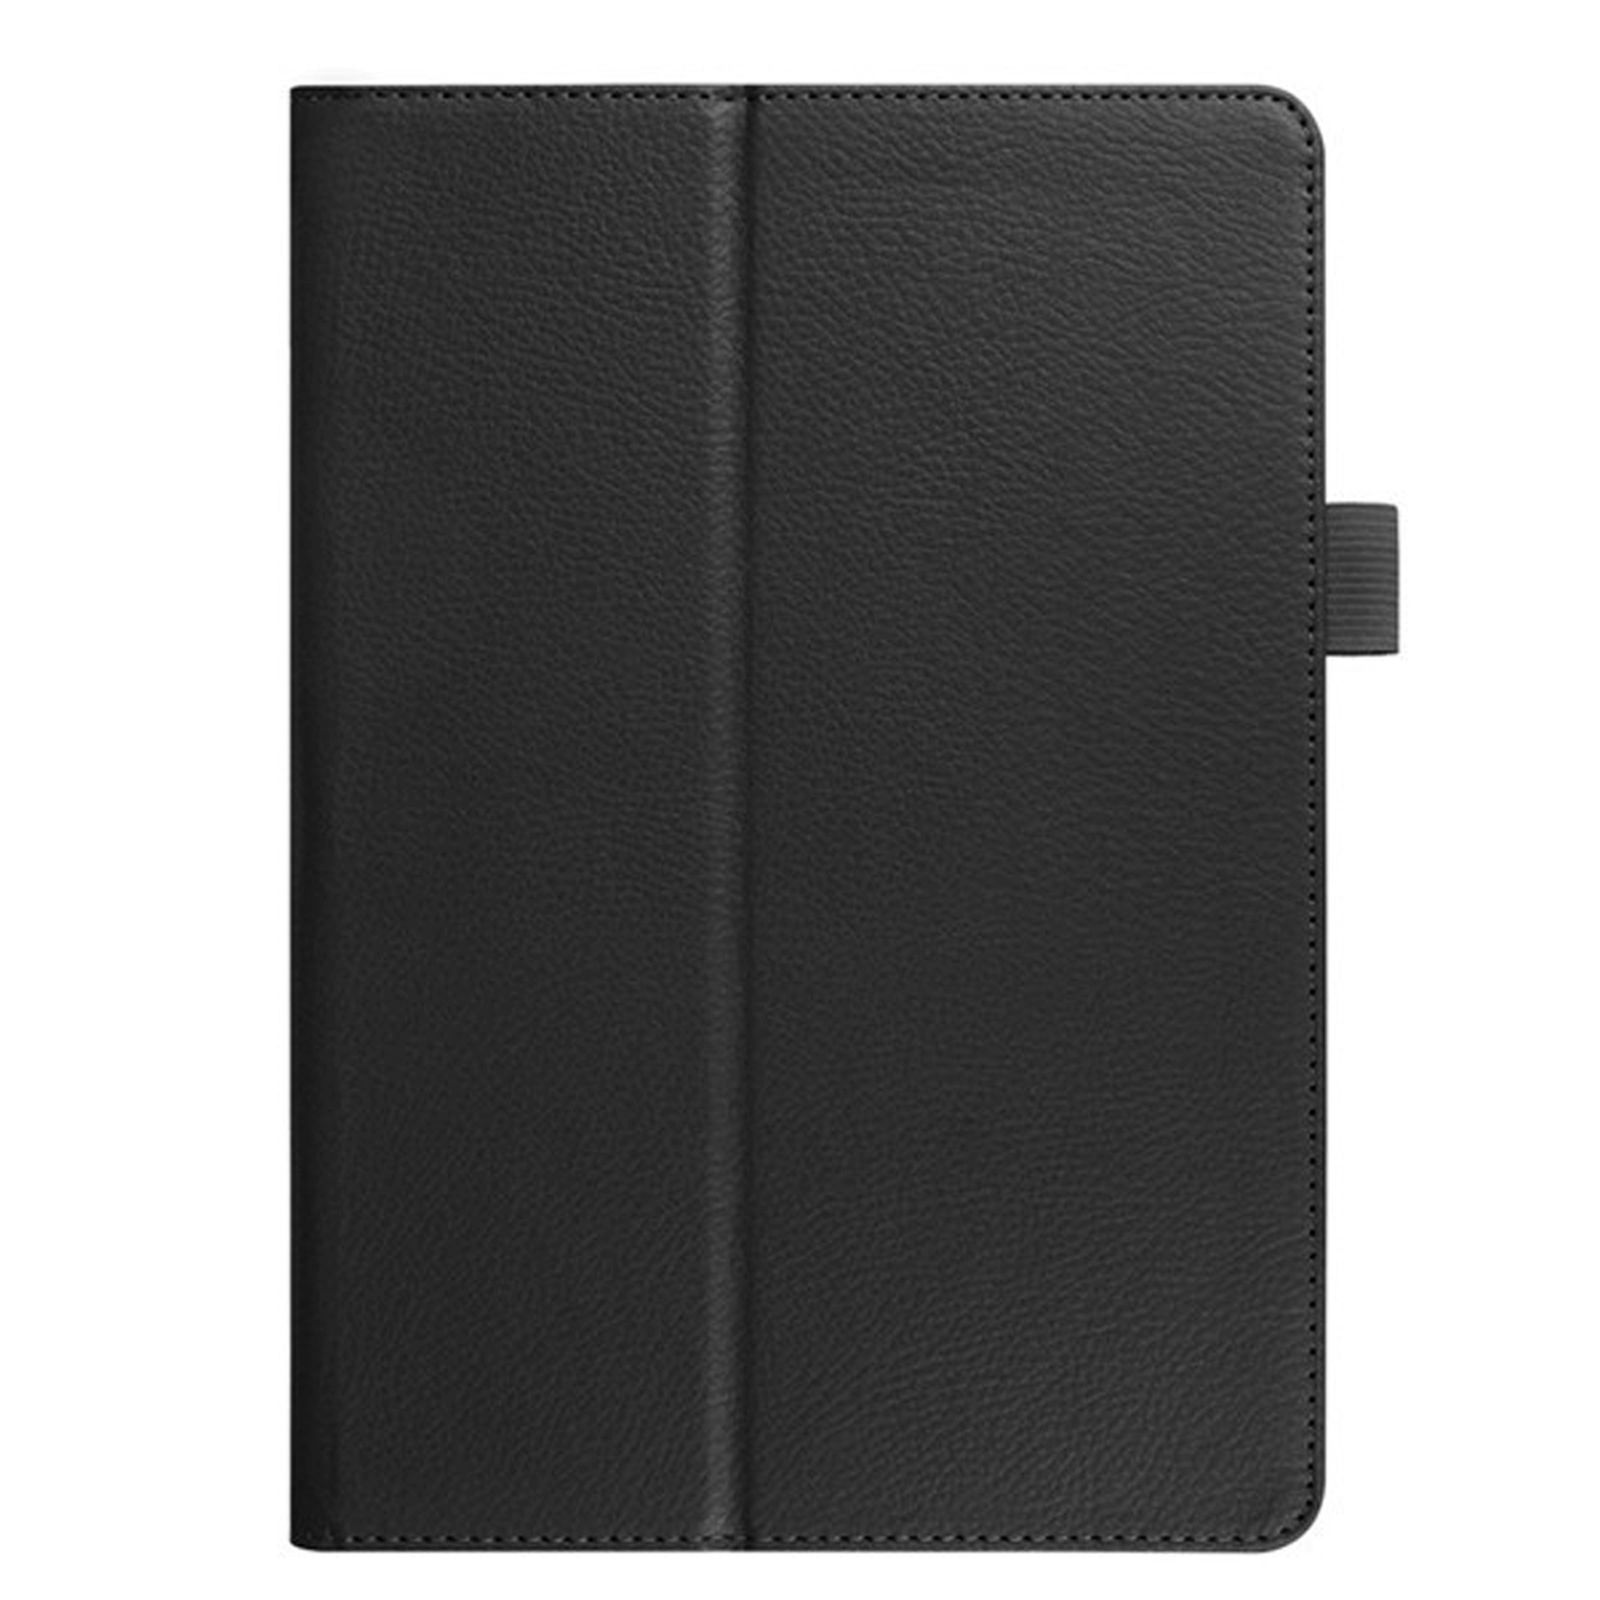 LOBWERK Hülle Schutzhülle Bookcover 2020 Pro Apple iPad für Kunstleder, 12.9 Schwarz